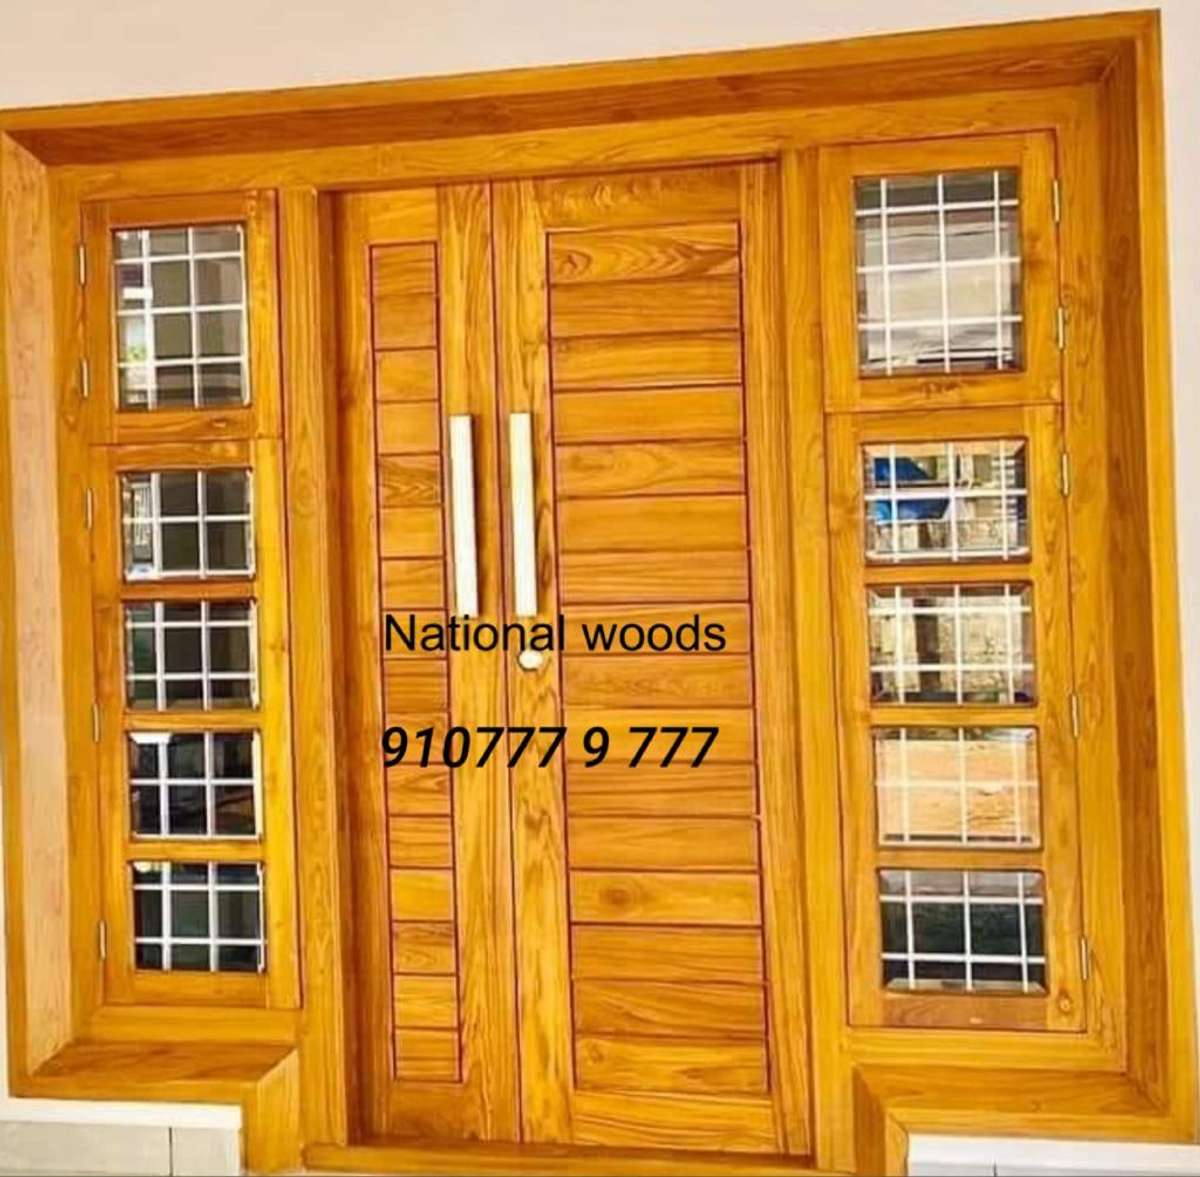 Teak wood double door #TeakWoodDoors  #WoodenWindows  #DoubleDoor